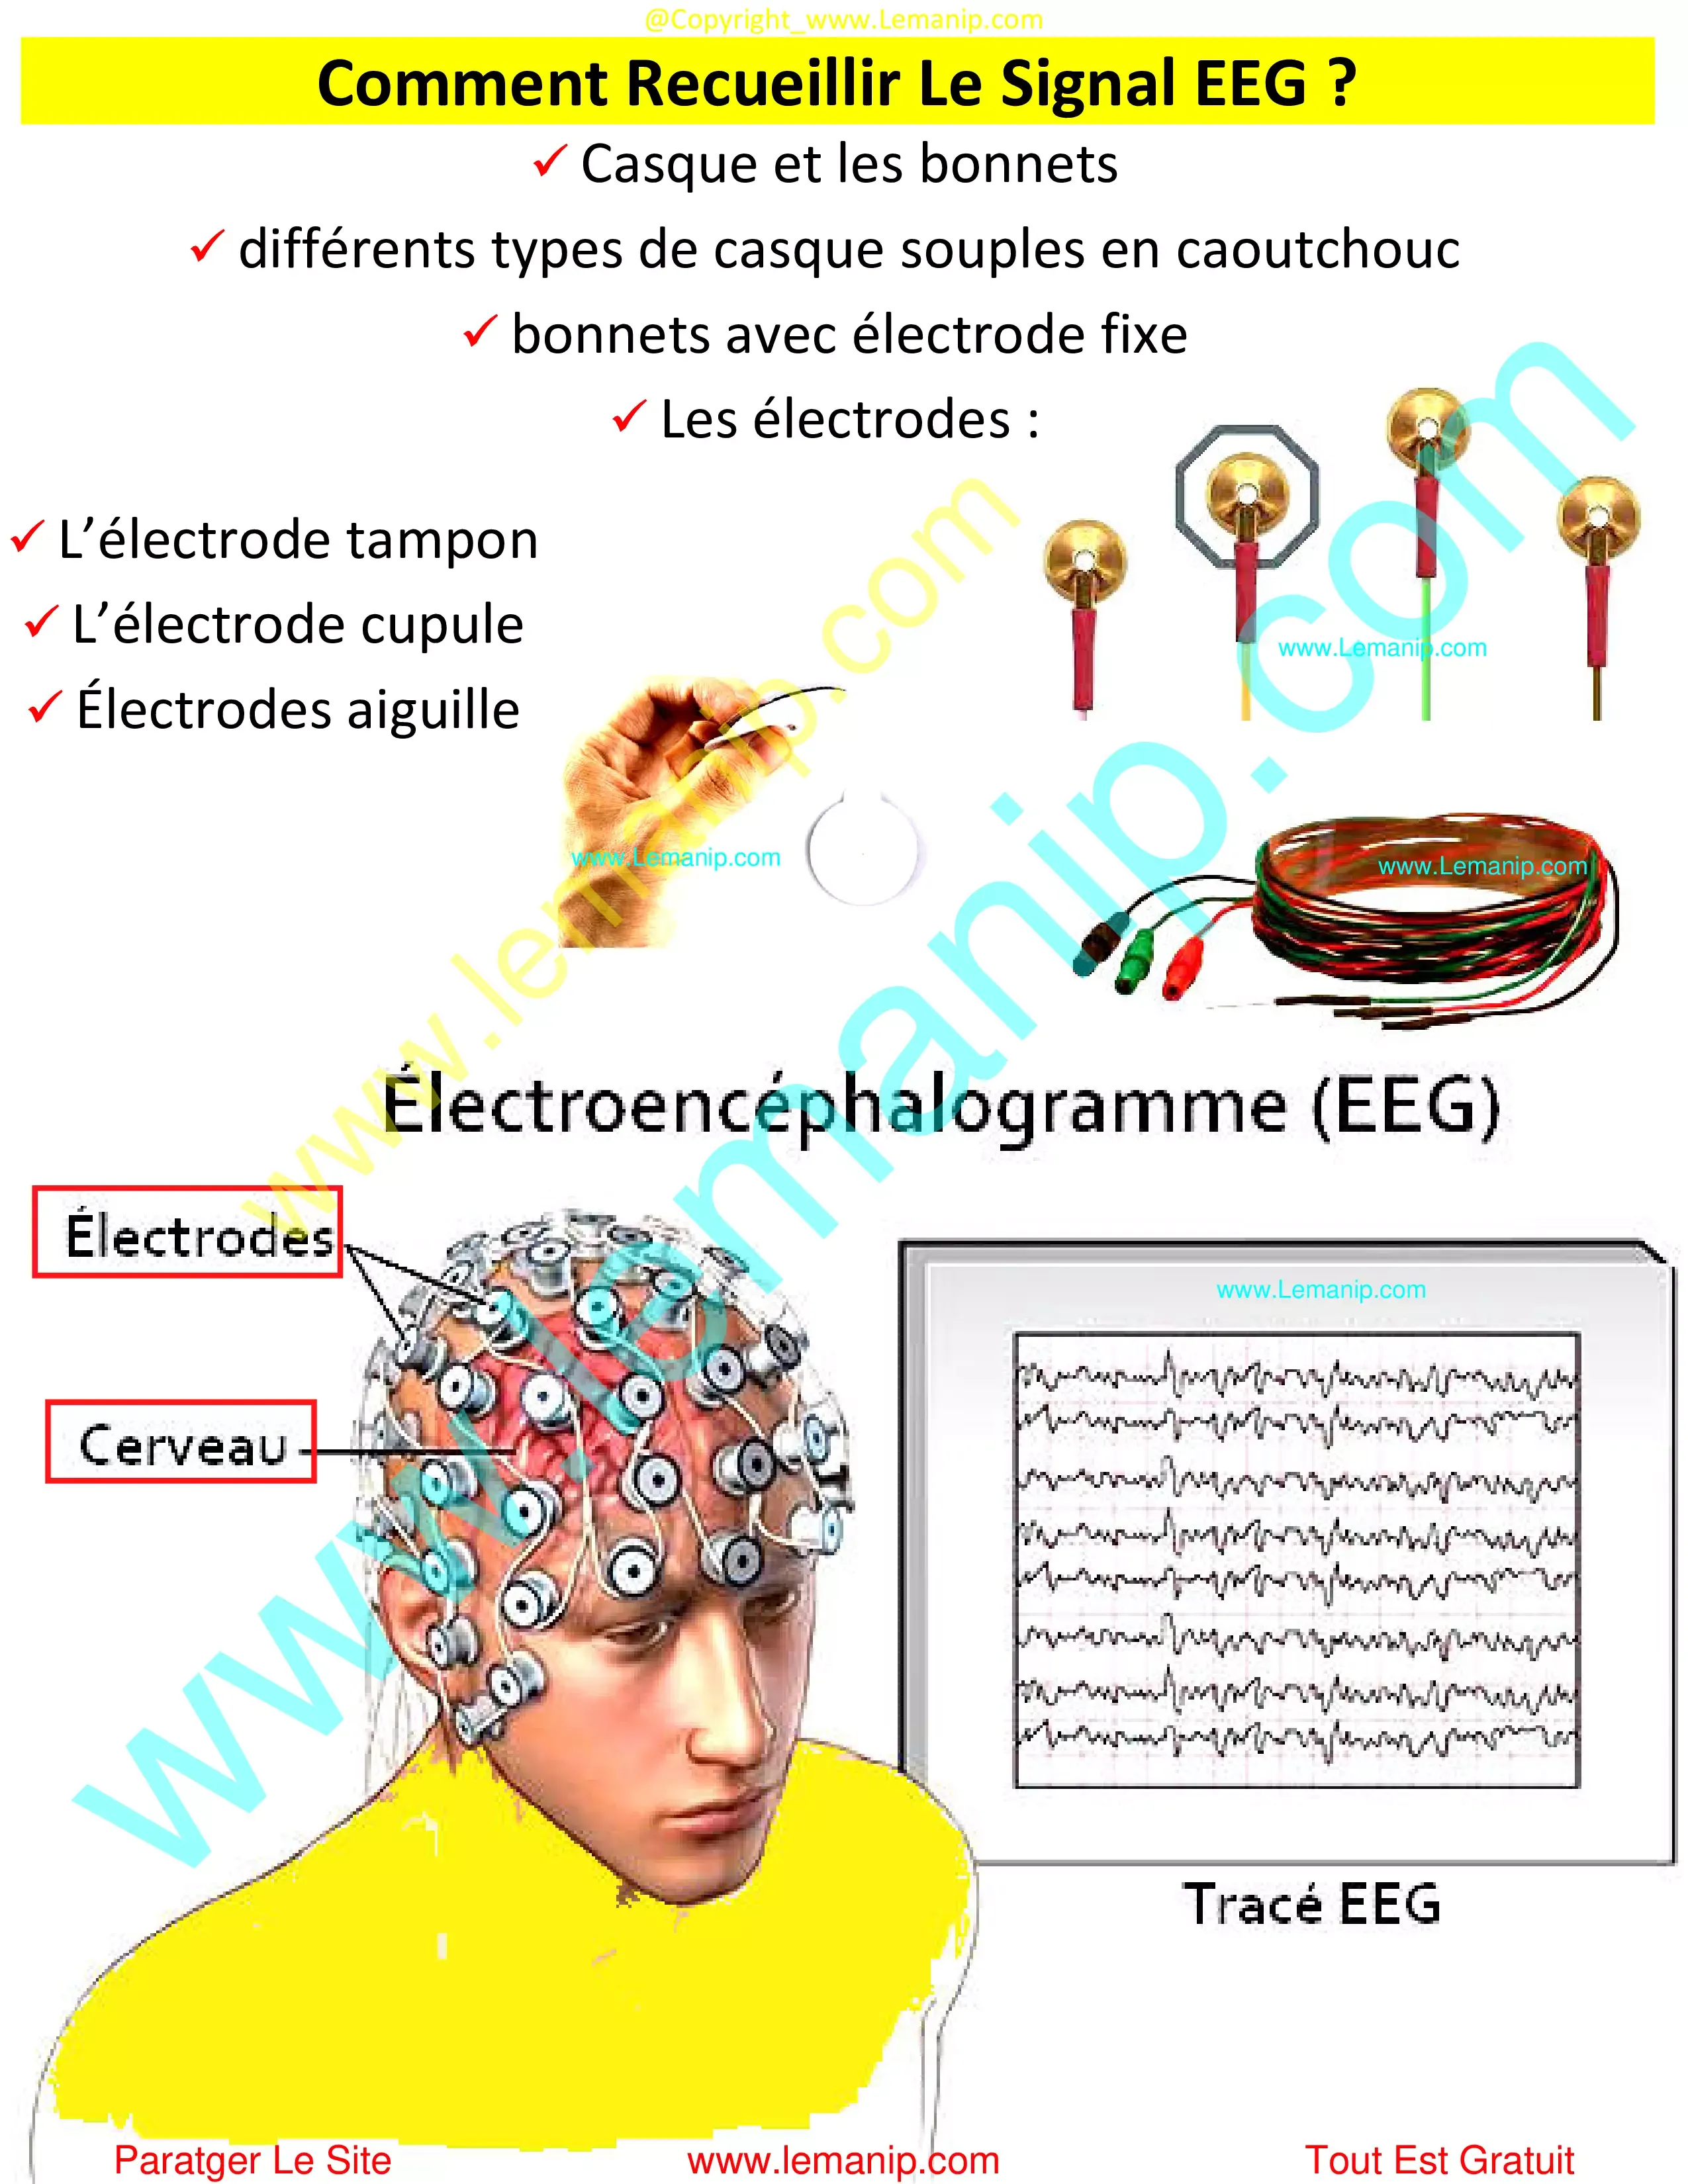 Comment Recueillir Le Signal EEG ?